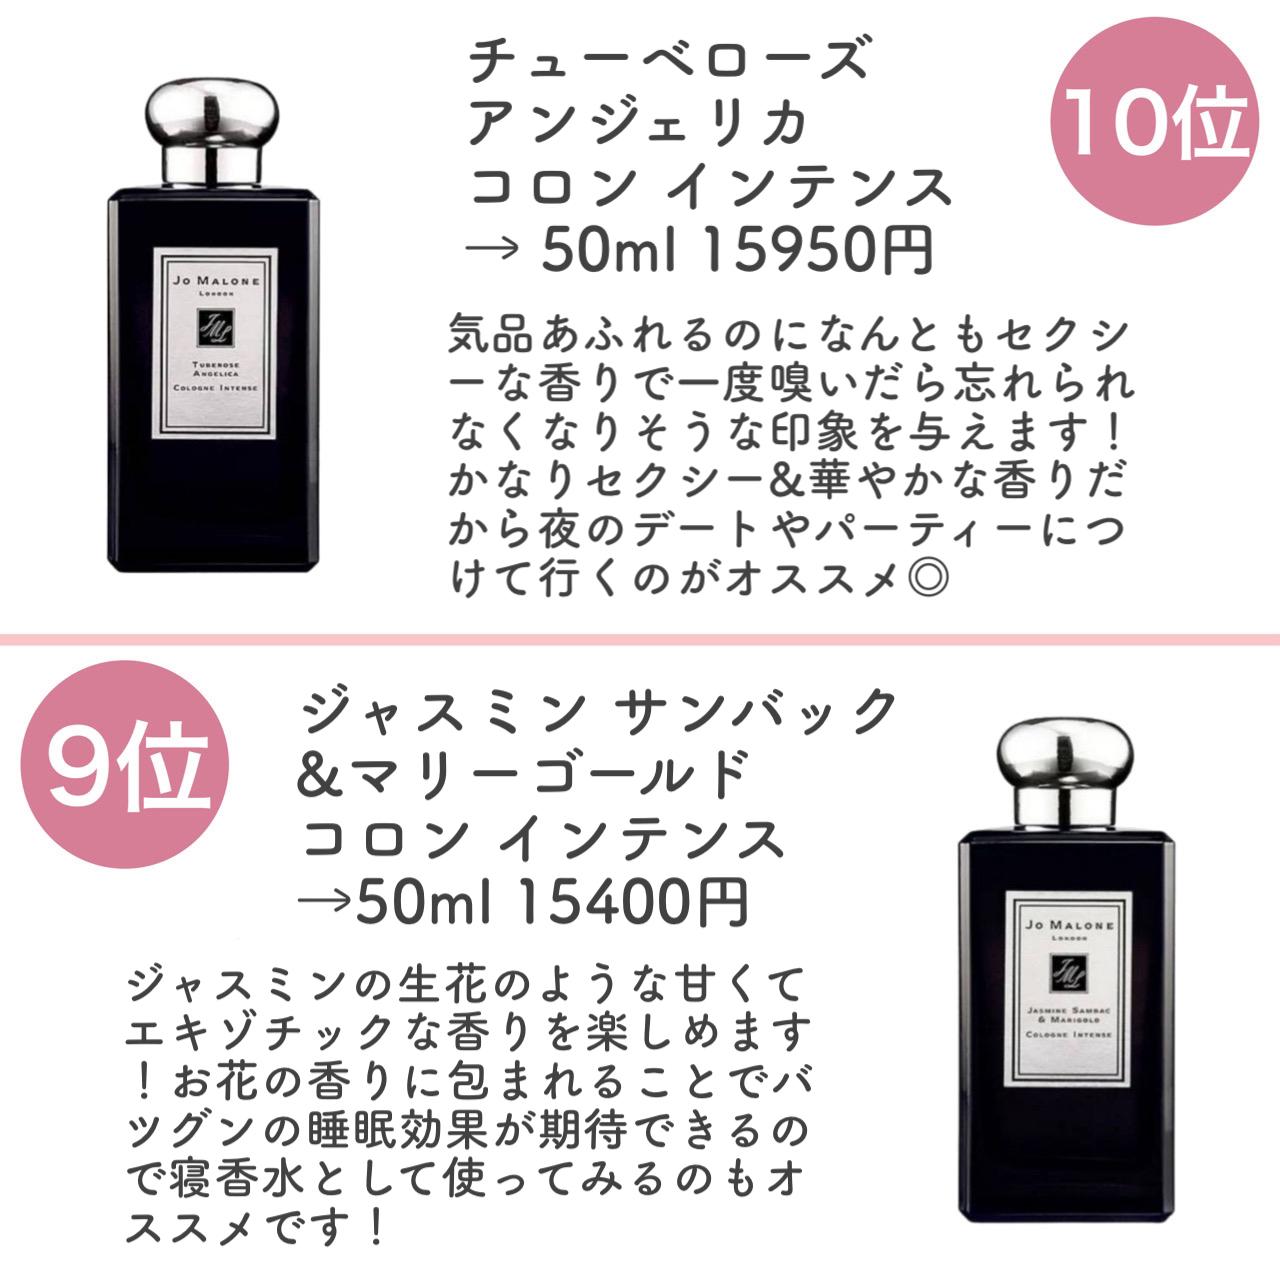 半額SALE☆ ジャスミンサンバッグマリーゴールド 50ml JOMALONE - 香水(女性用)